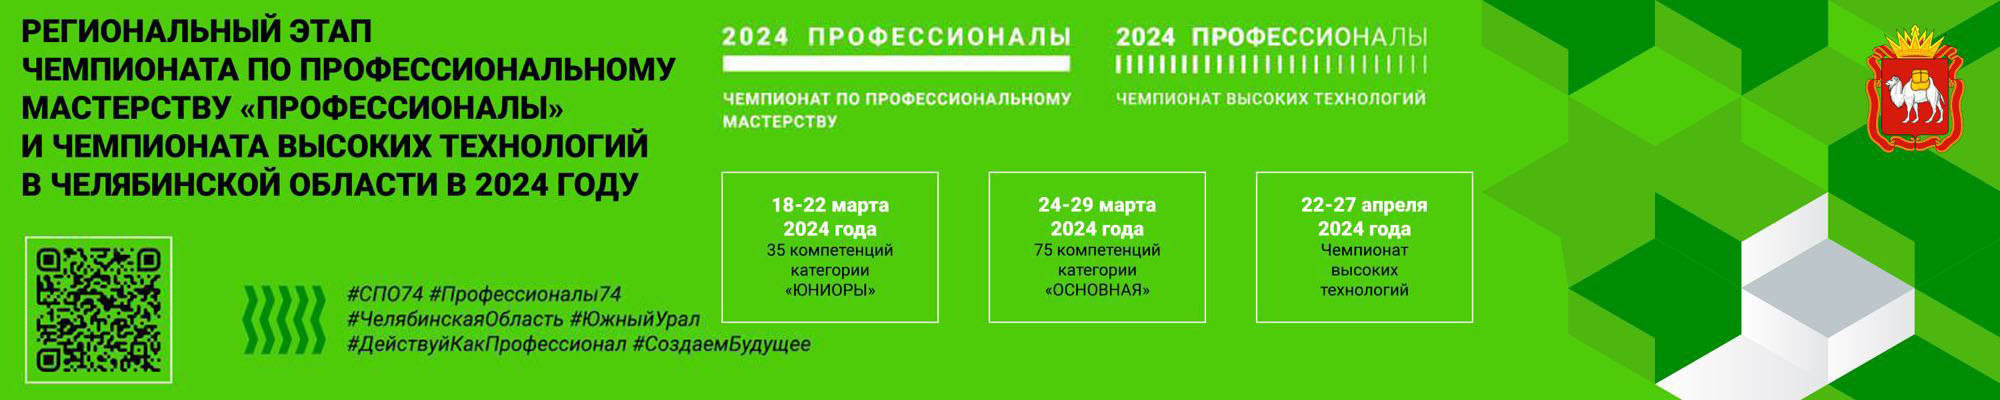 Отборочный этап Регионального Чемпионата Челябинской области по компетенции Сварочные технологии 